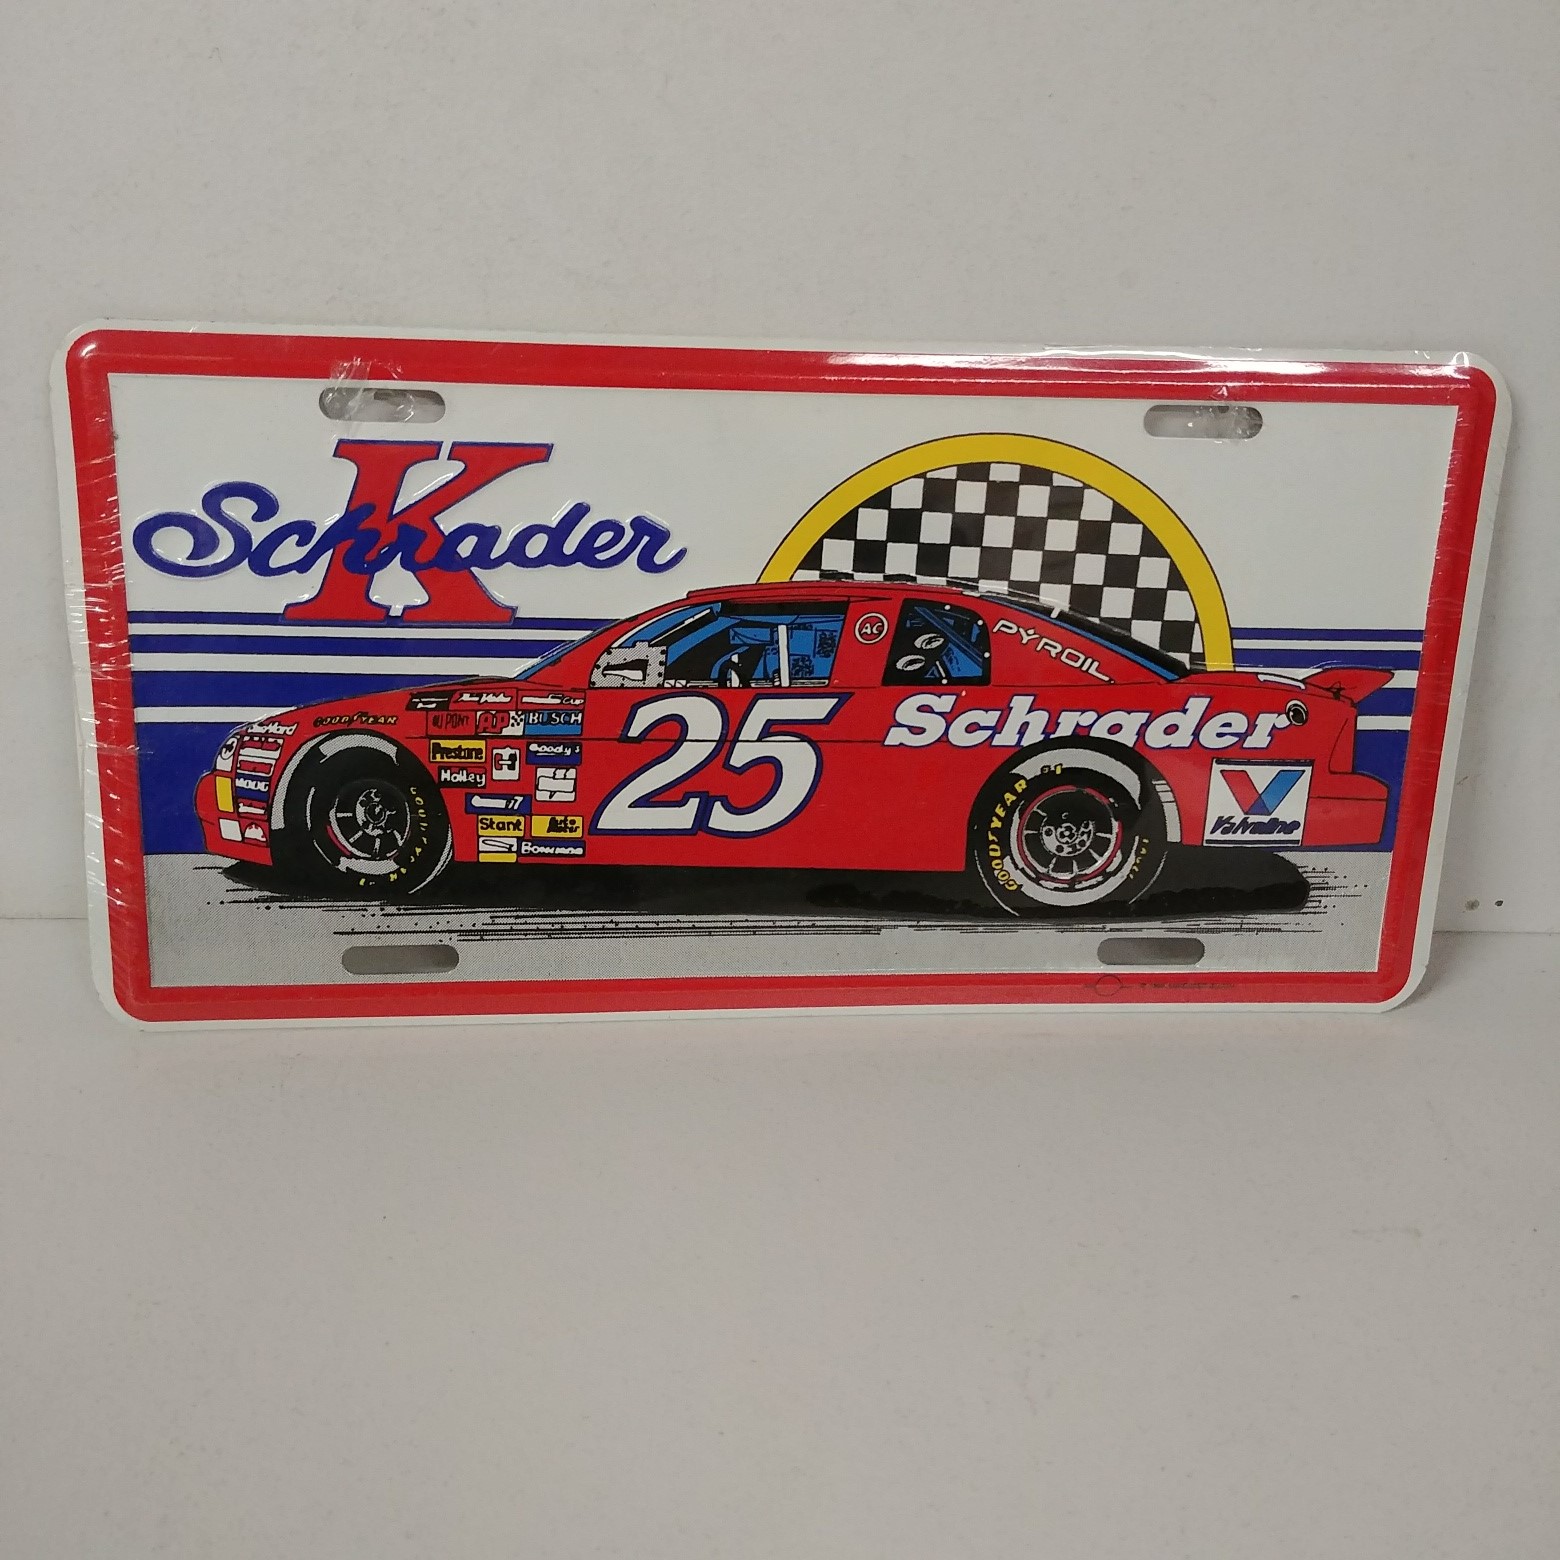 1995 Ken Schrader Budweiser (Schrader) metal license plate